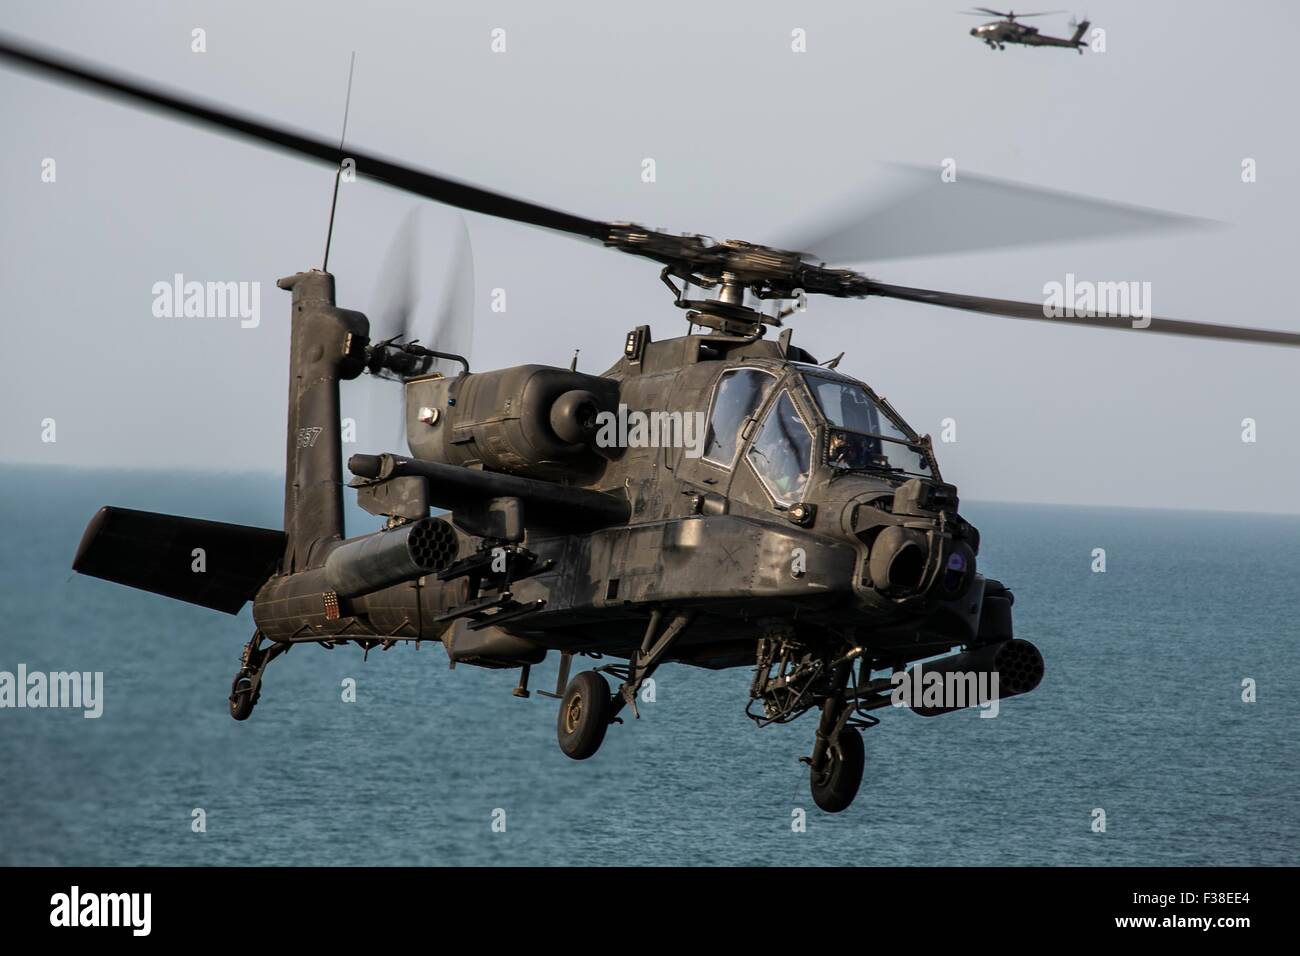 Ejército de EE.UU. helicópteros de ataque Apache AH-64 se prepara para aterrizar a bordo del buque de asalto anfibio USS Essex Septiembre 29, 2015 opera en el Golfo Arábigo. Foto de stock